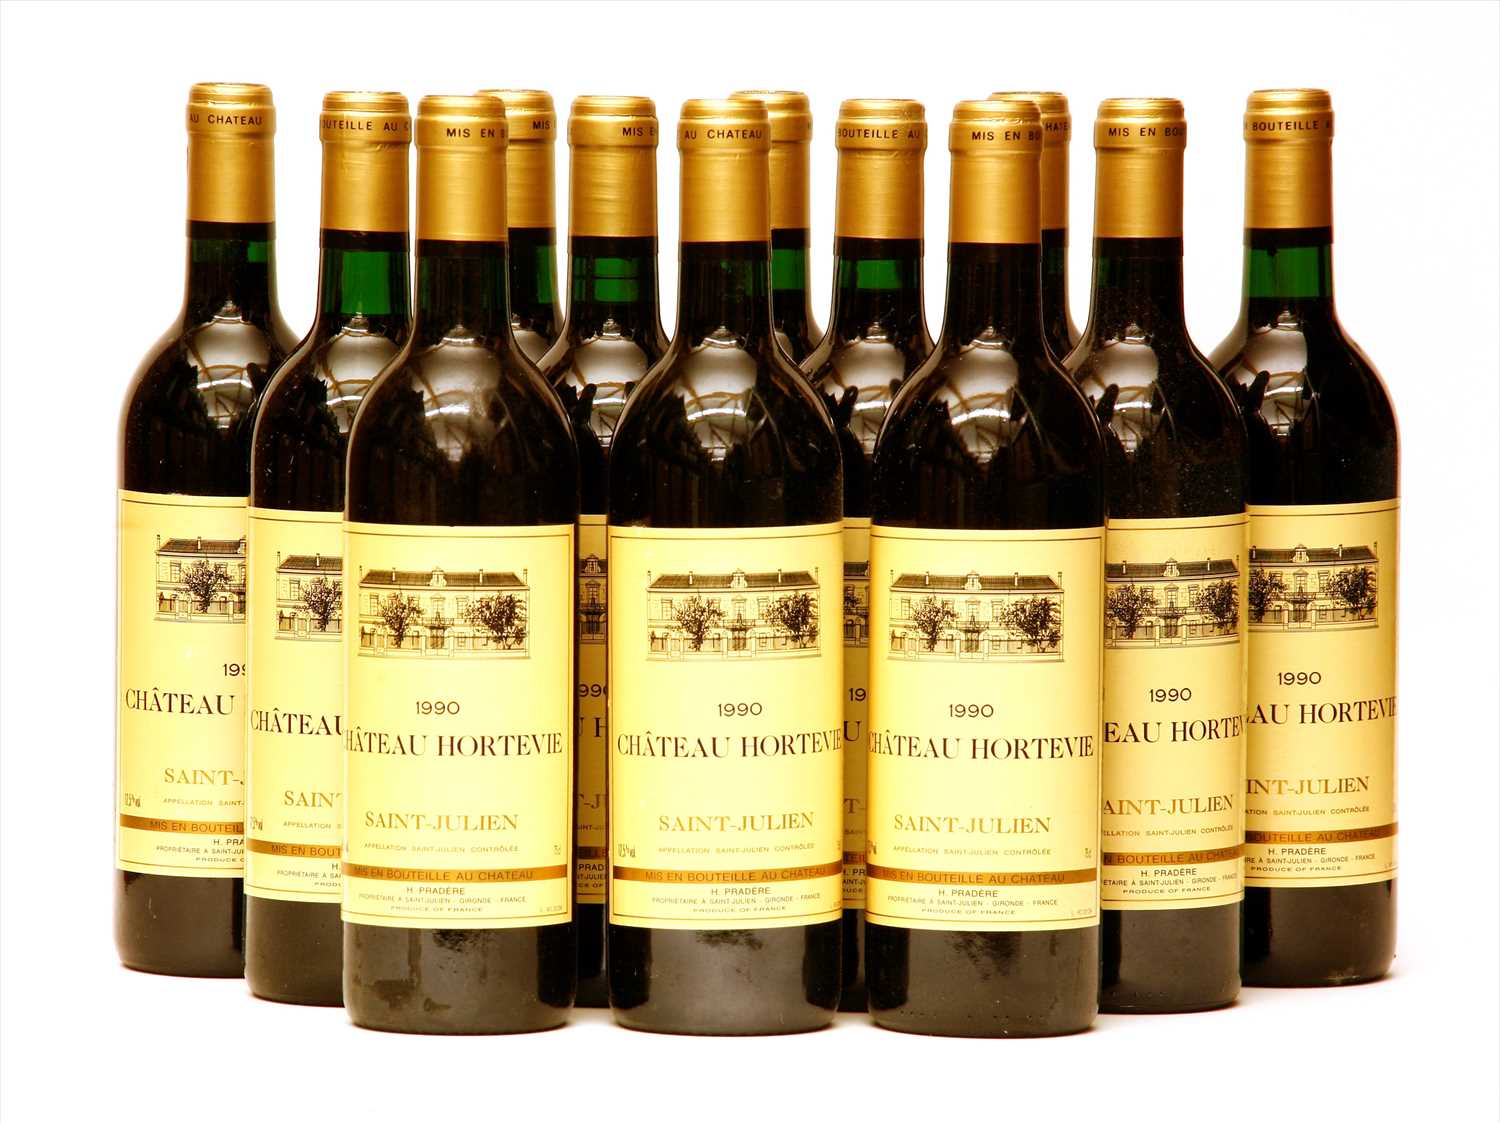 Lot 278 - Château Hortevie, Saint-Julien, 1990, twelve bottles (boxed)